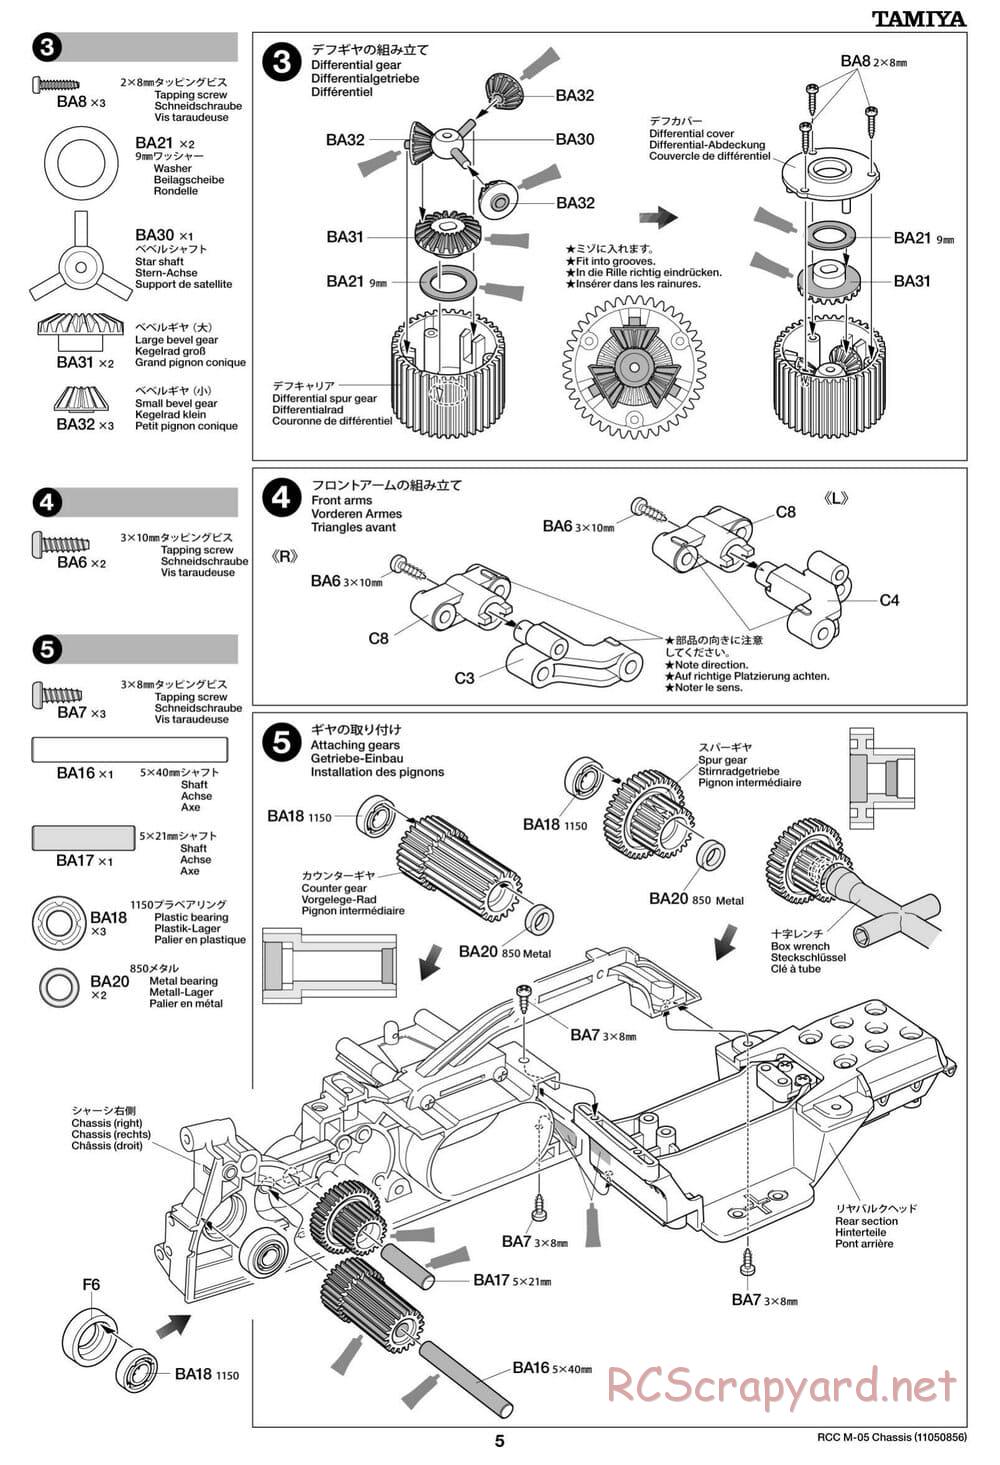 Tamiya - M-05 Chassis - Manual - Page 5